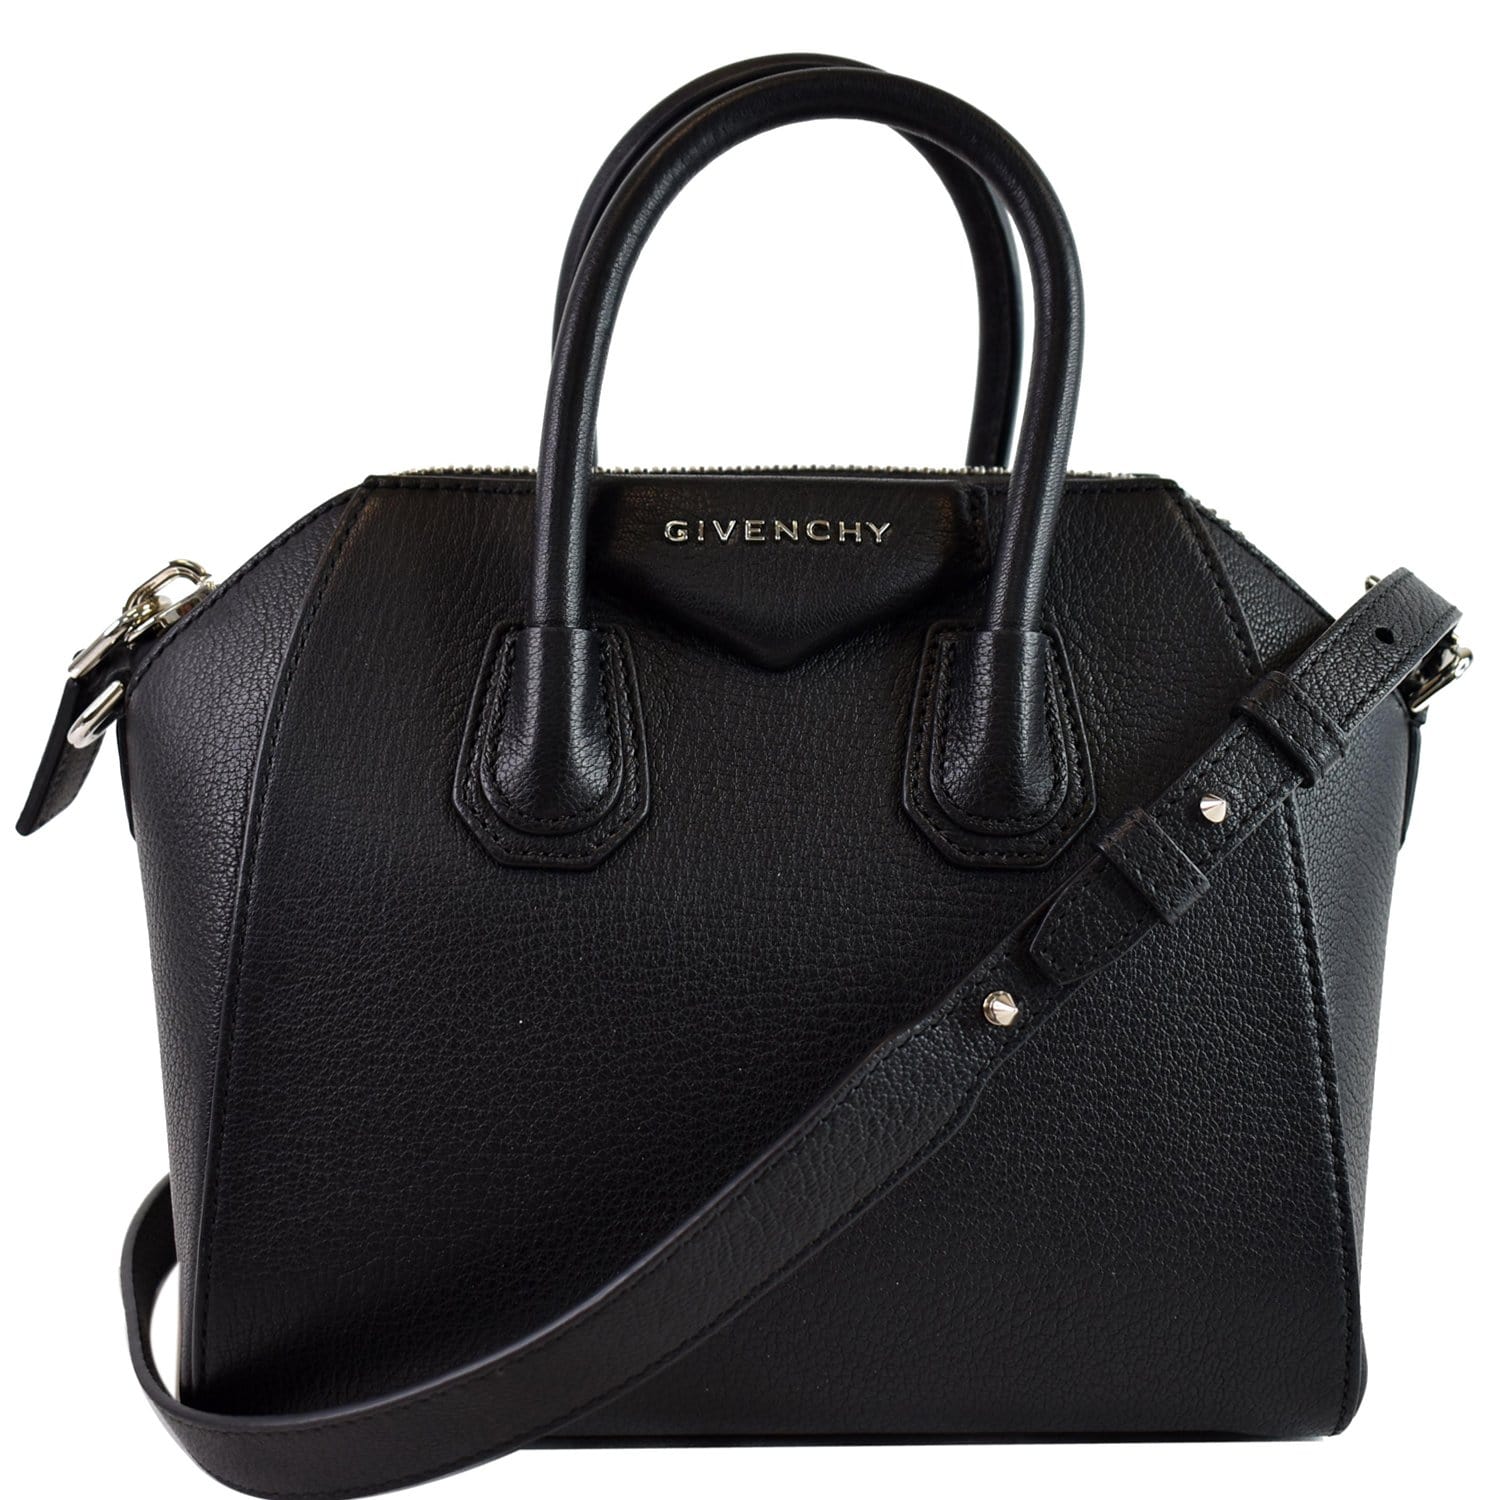 Givenchy Antigona Micro Leather Shoulder Bag In Celadon